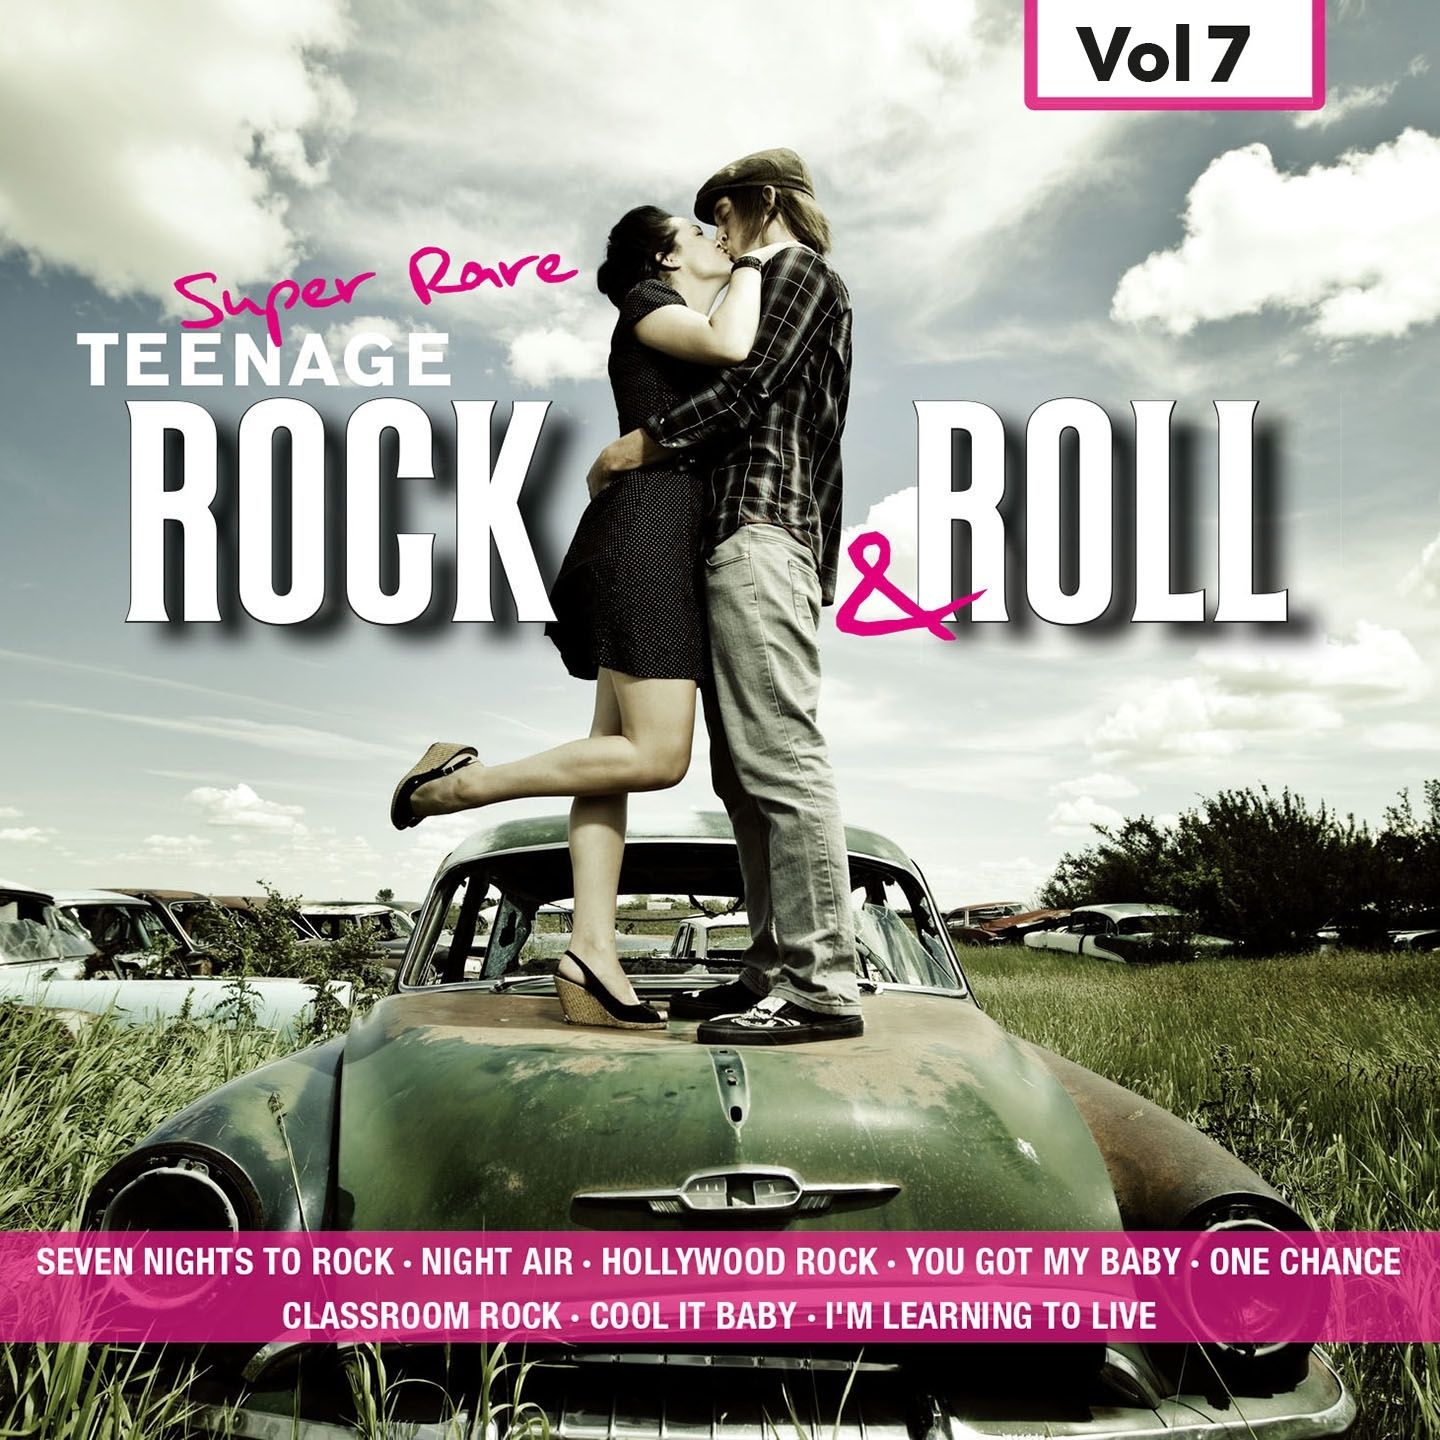 Super Rare Teenage Rock & Roll, Vol.7